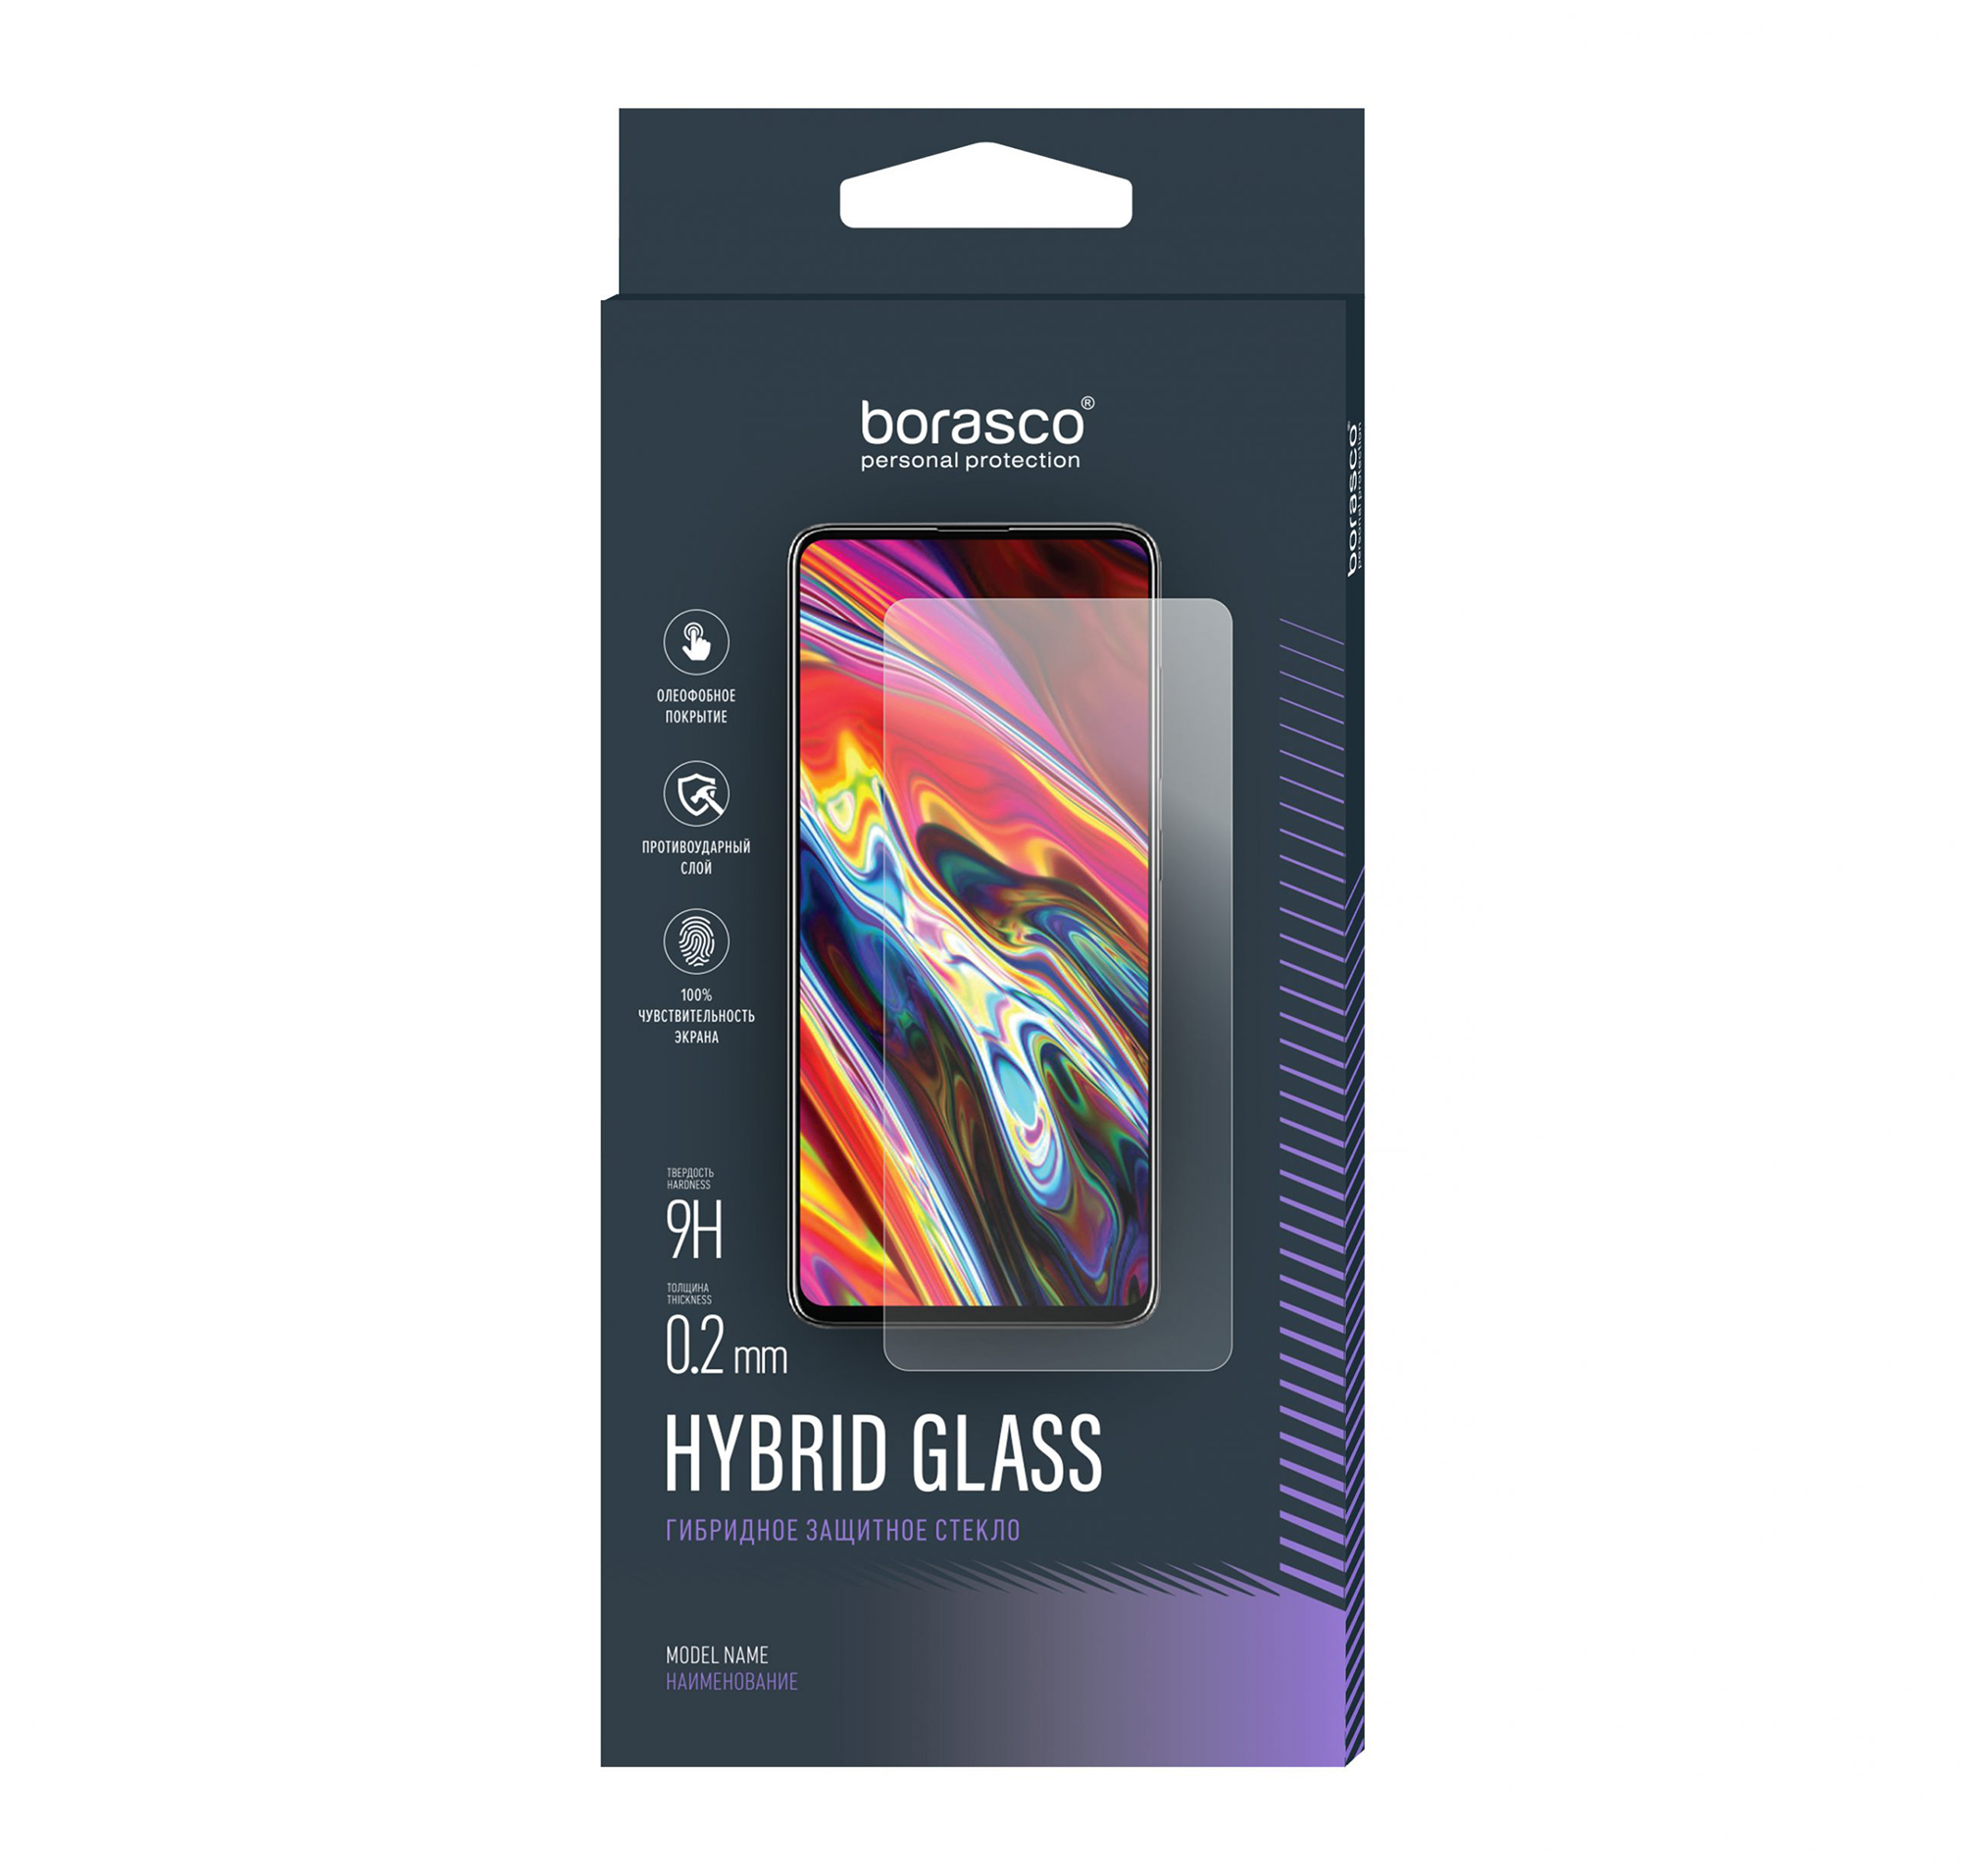 Защитное стекло Hybrid Glass для Huawei MediaPad T3 8 чехол для планшета из искусственной кожи для huawei mediapad t310 9 6 дюйма mediapad t1 t3 7 0 8 0 mediapad t1 t5 10 откидной чехол подставка стилус